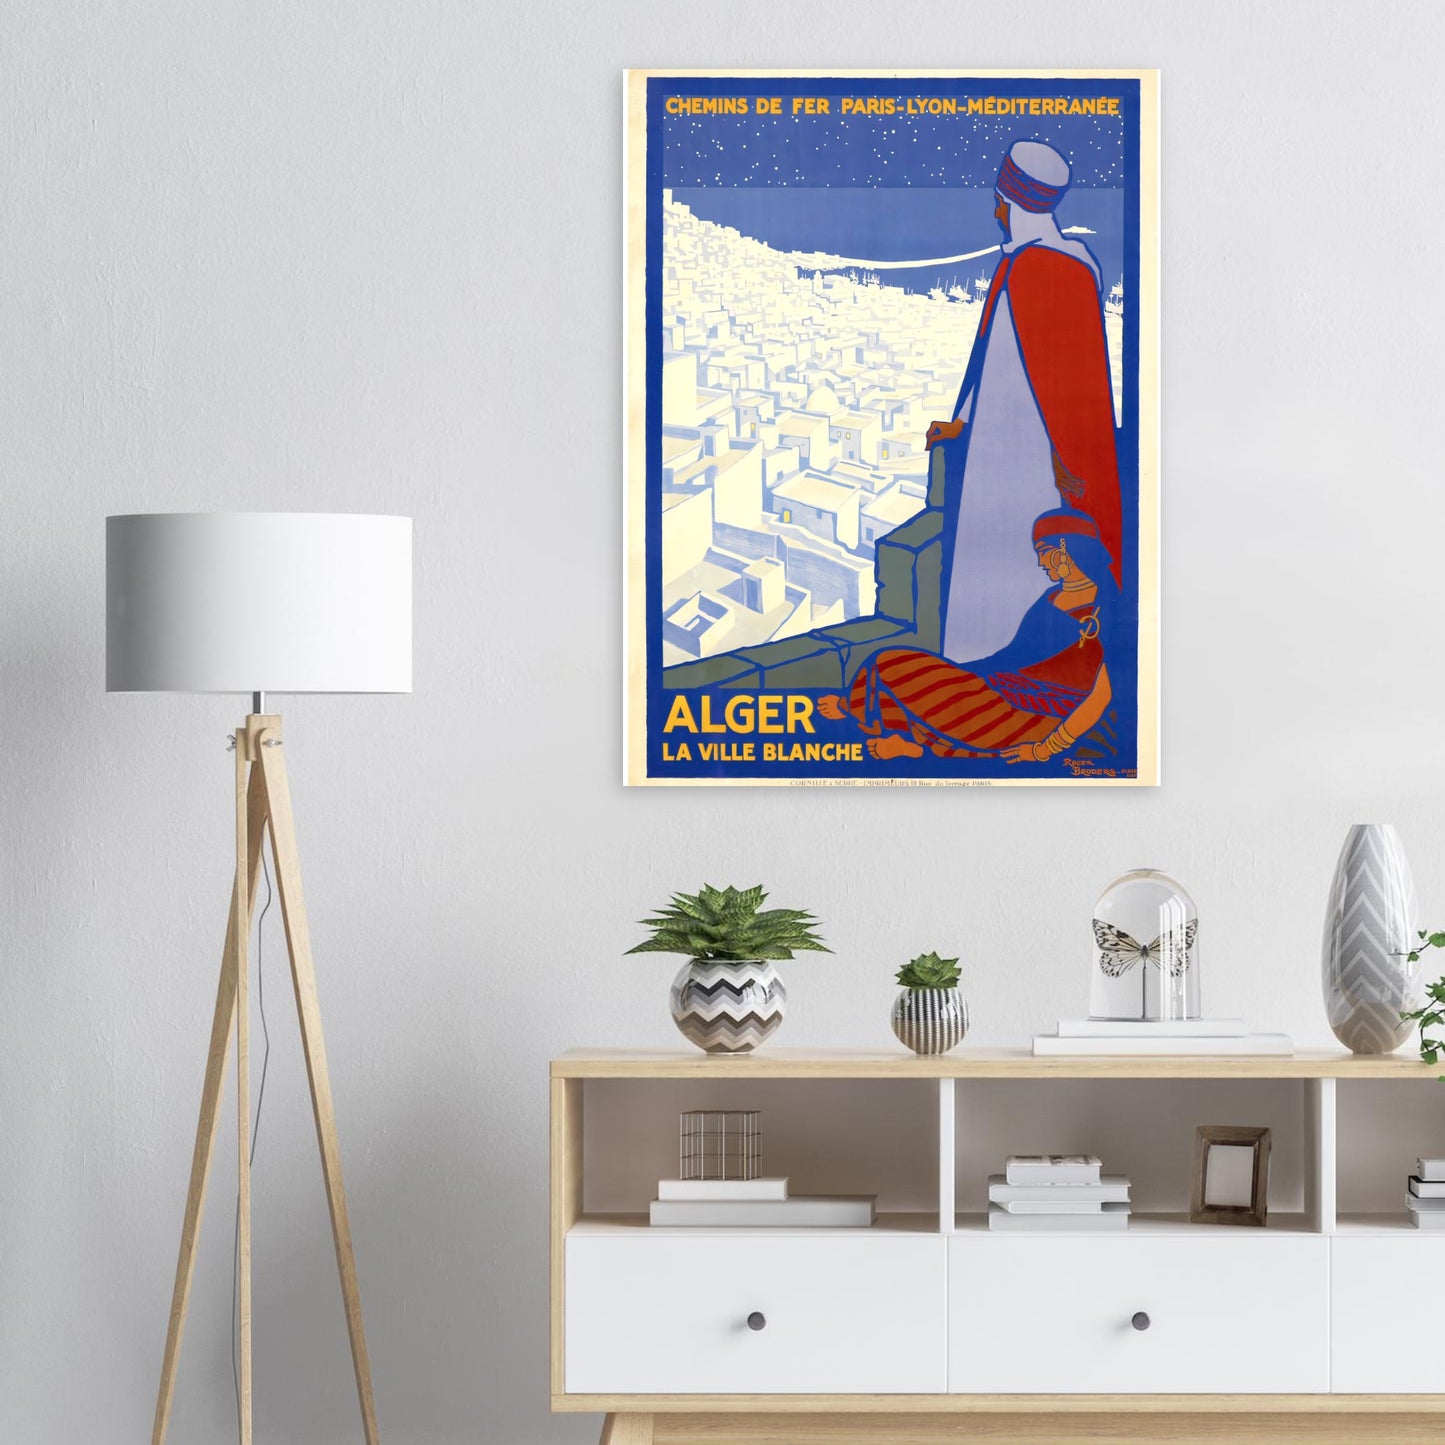 Alger Vintage Poster Reprint on Premium Matte Paper - Posterify